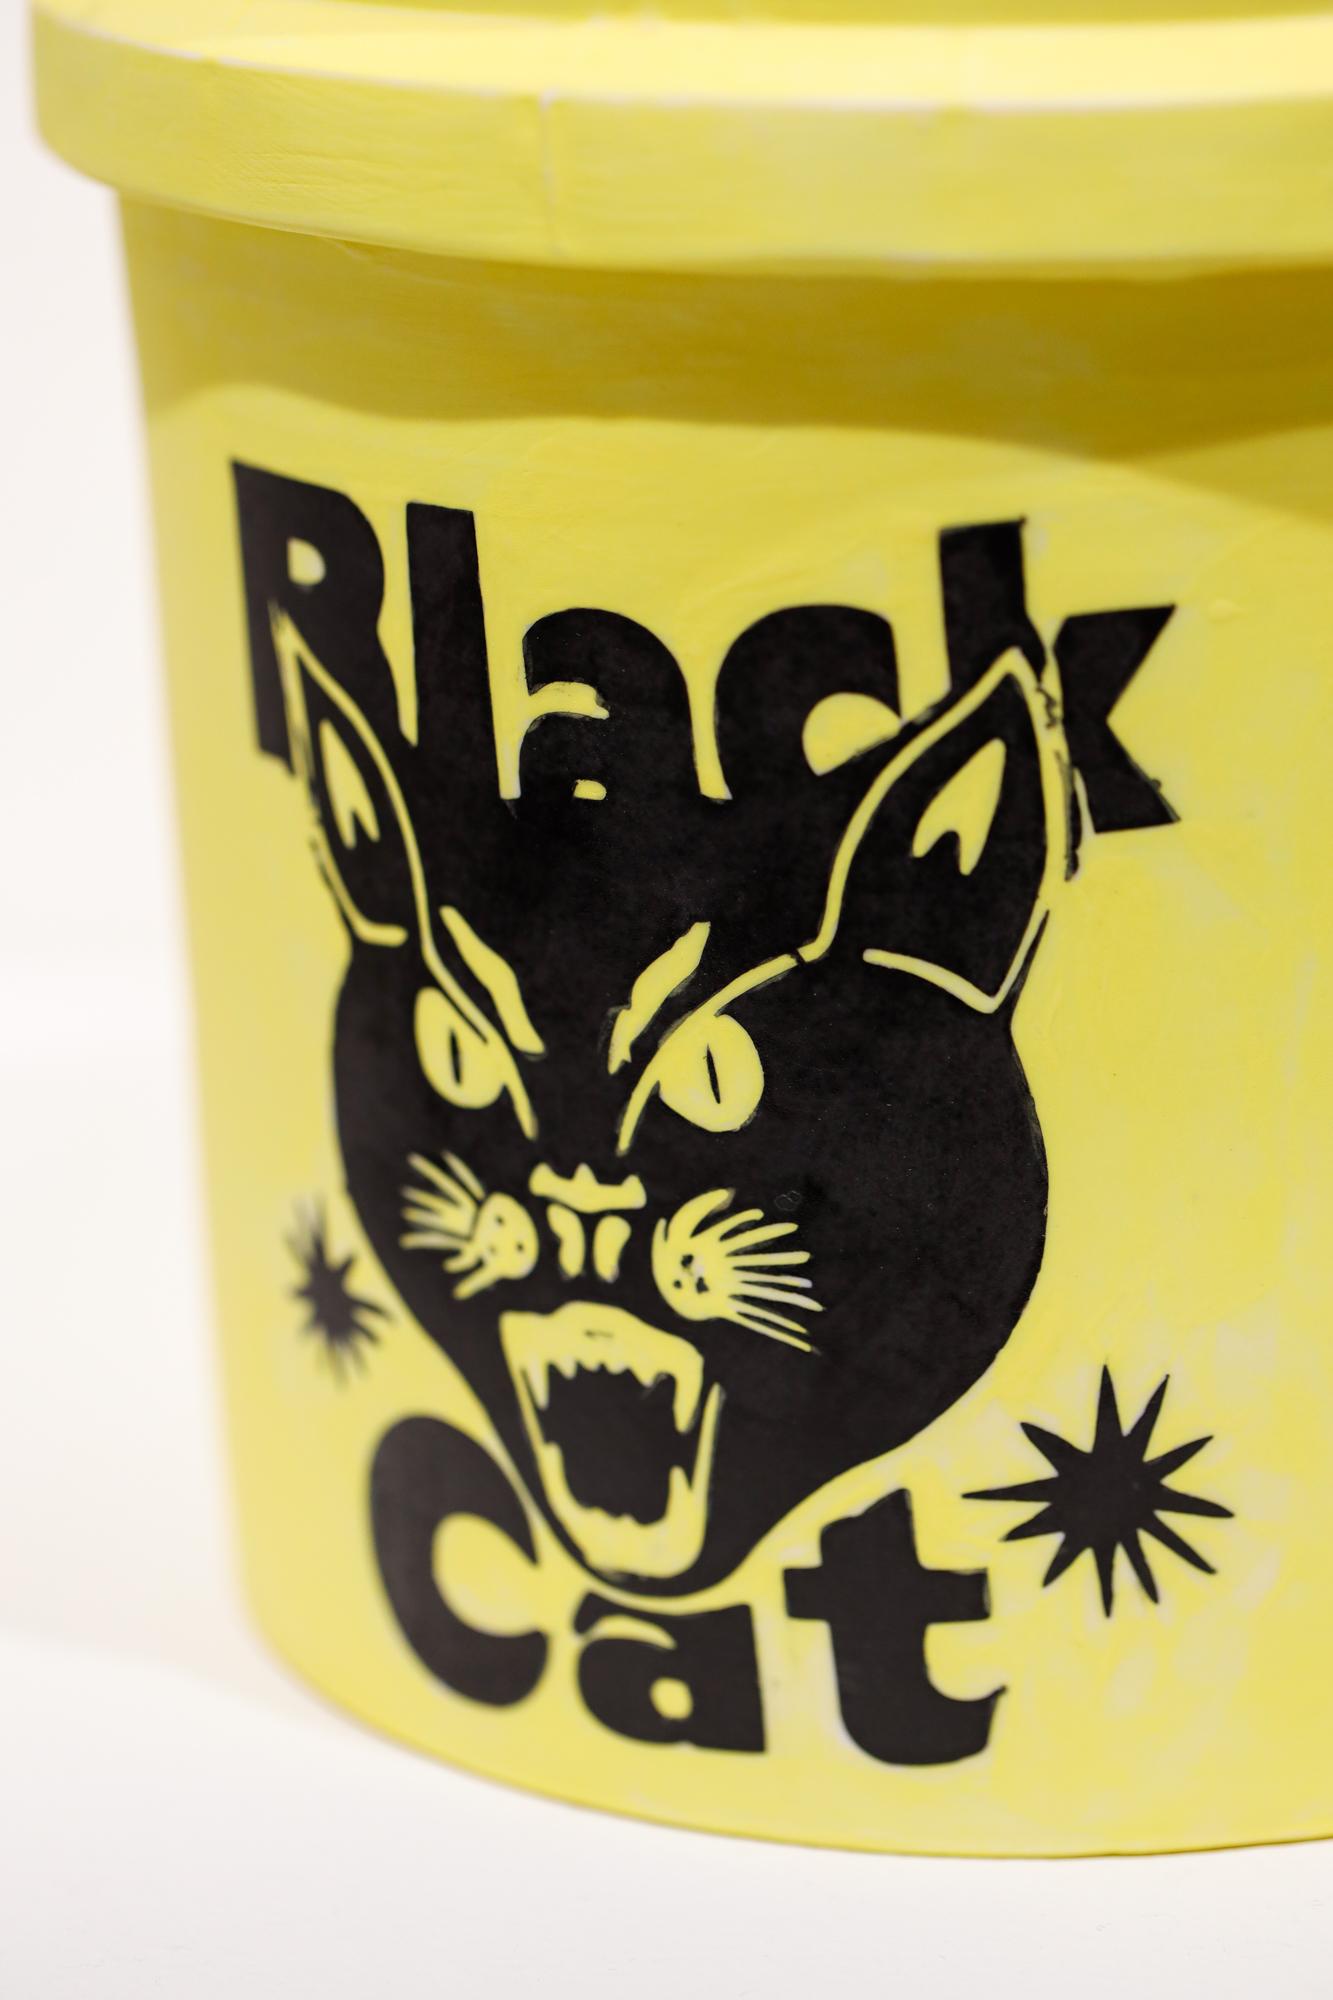 Black Cat Bucket - Contemporary Sculpture by Brock DeBoer